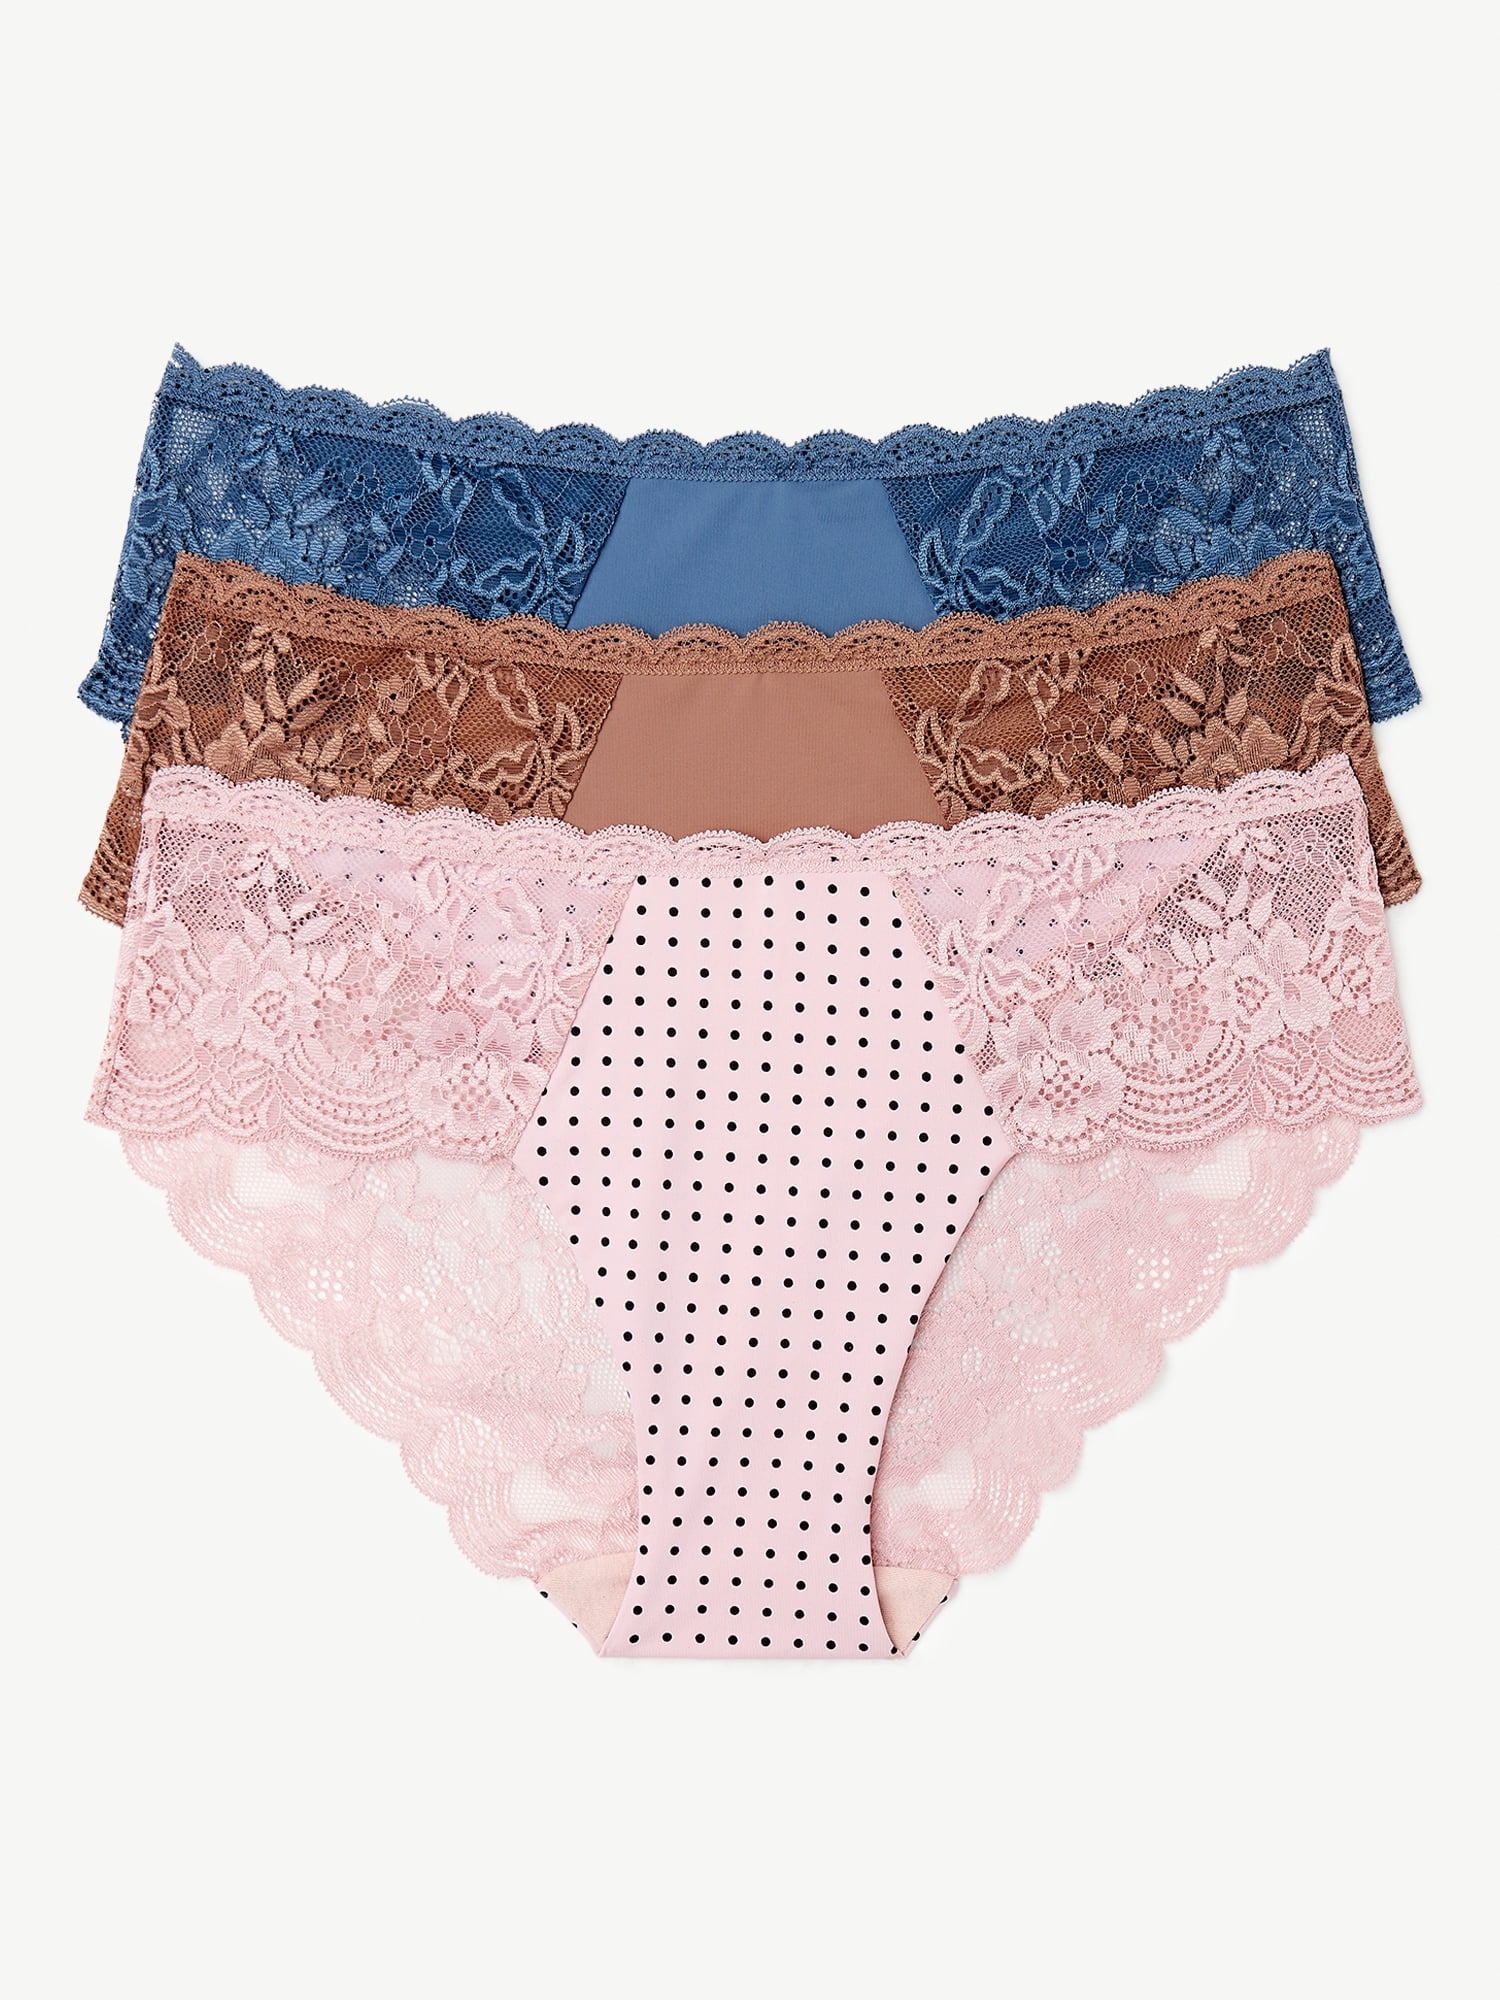 Joyspun Women\'s Microfiber Hipster Panties, 3-Pack, Sizes XS to 3XL